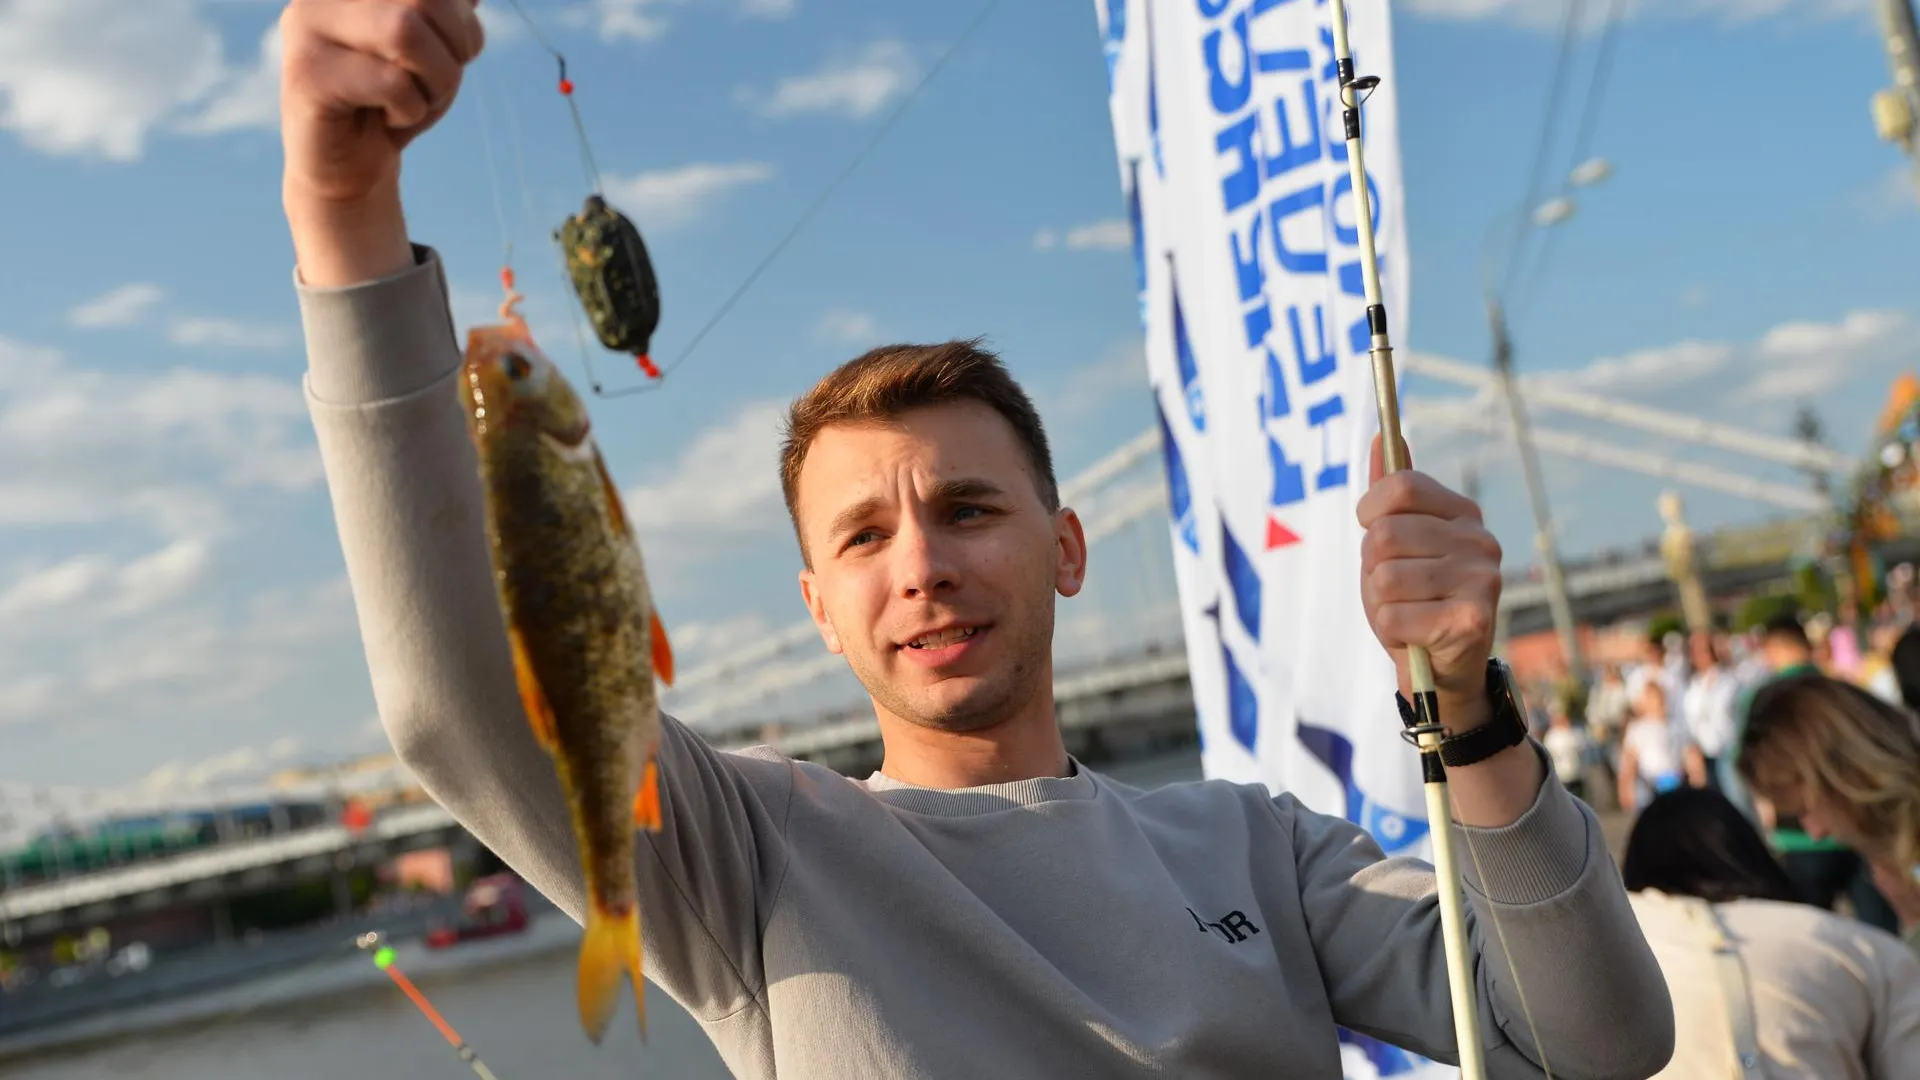 Обладатель самого большого улова на «Рыбной неделе» в Москве получит 1 млн руб